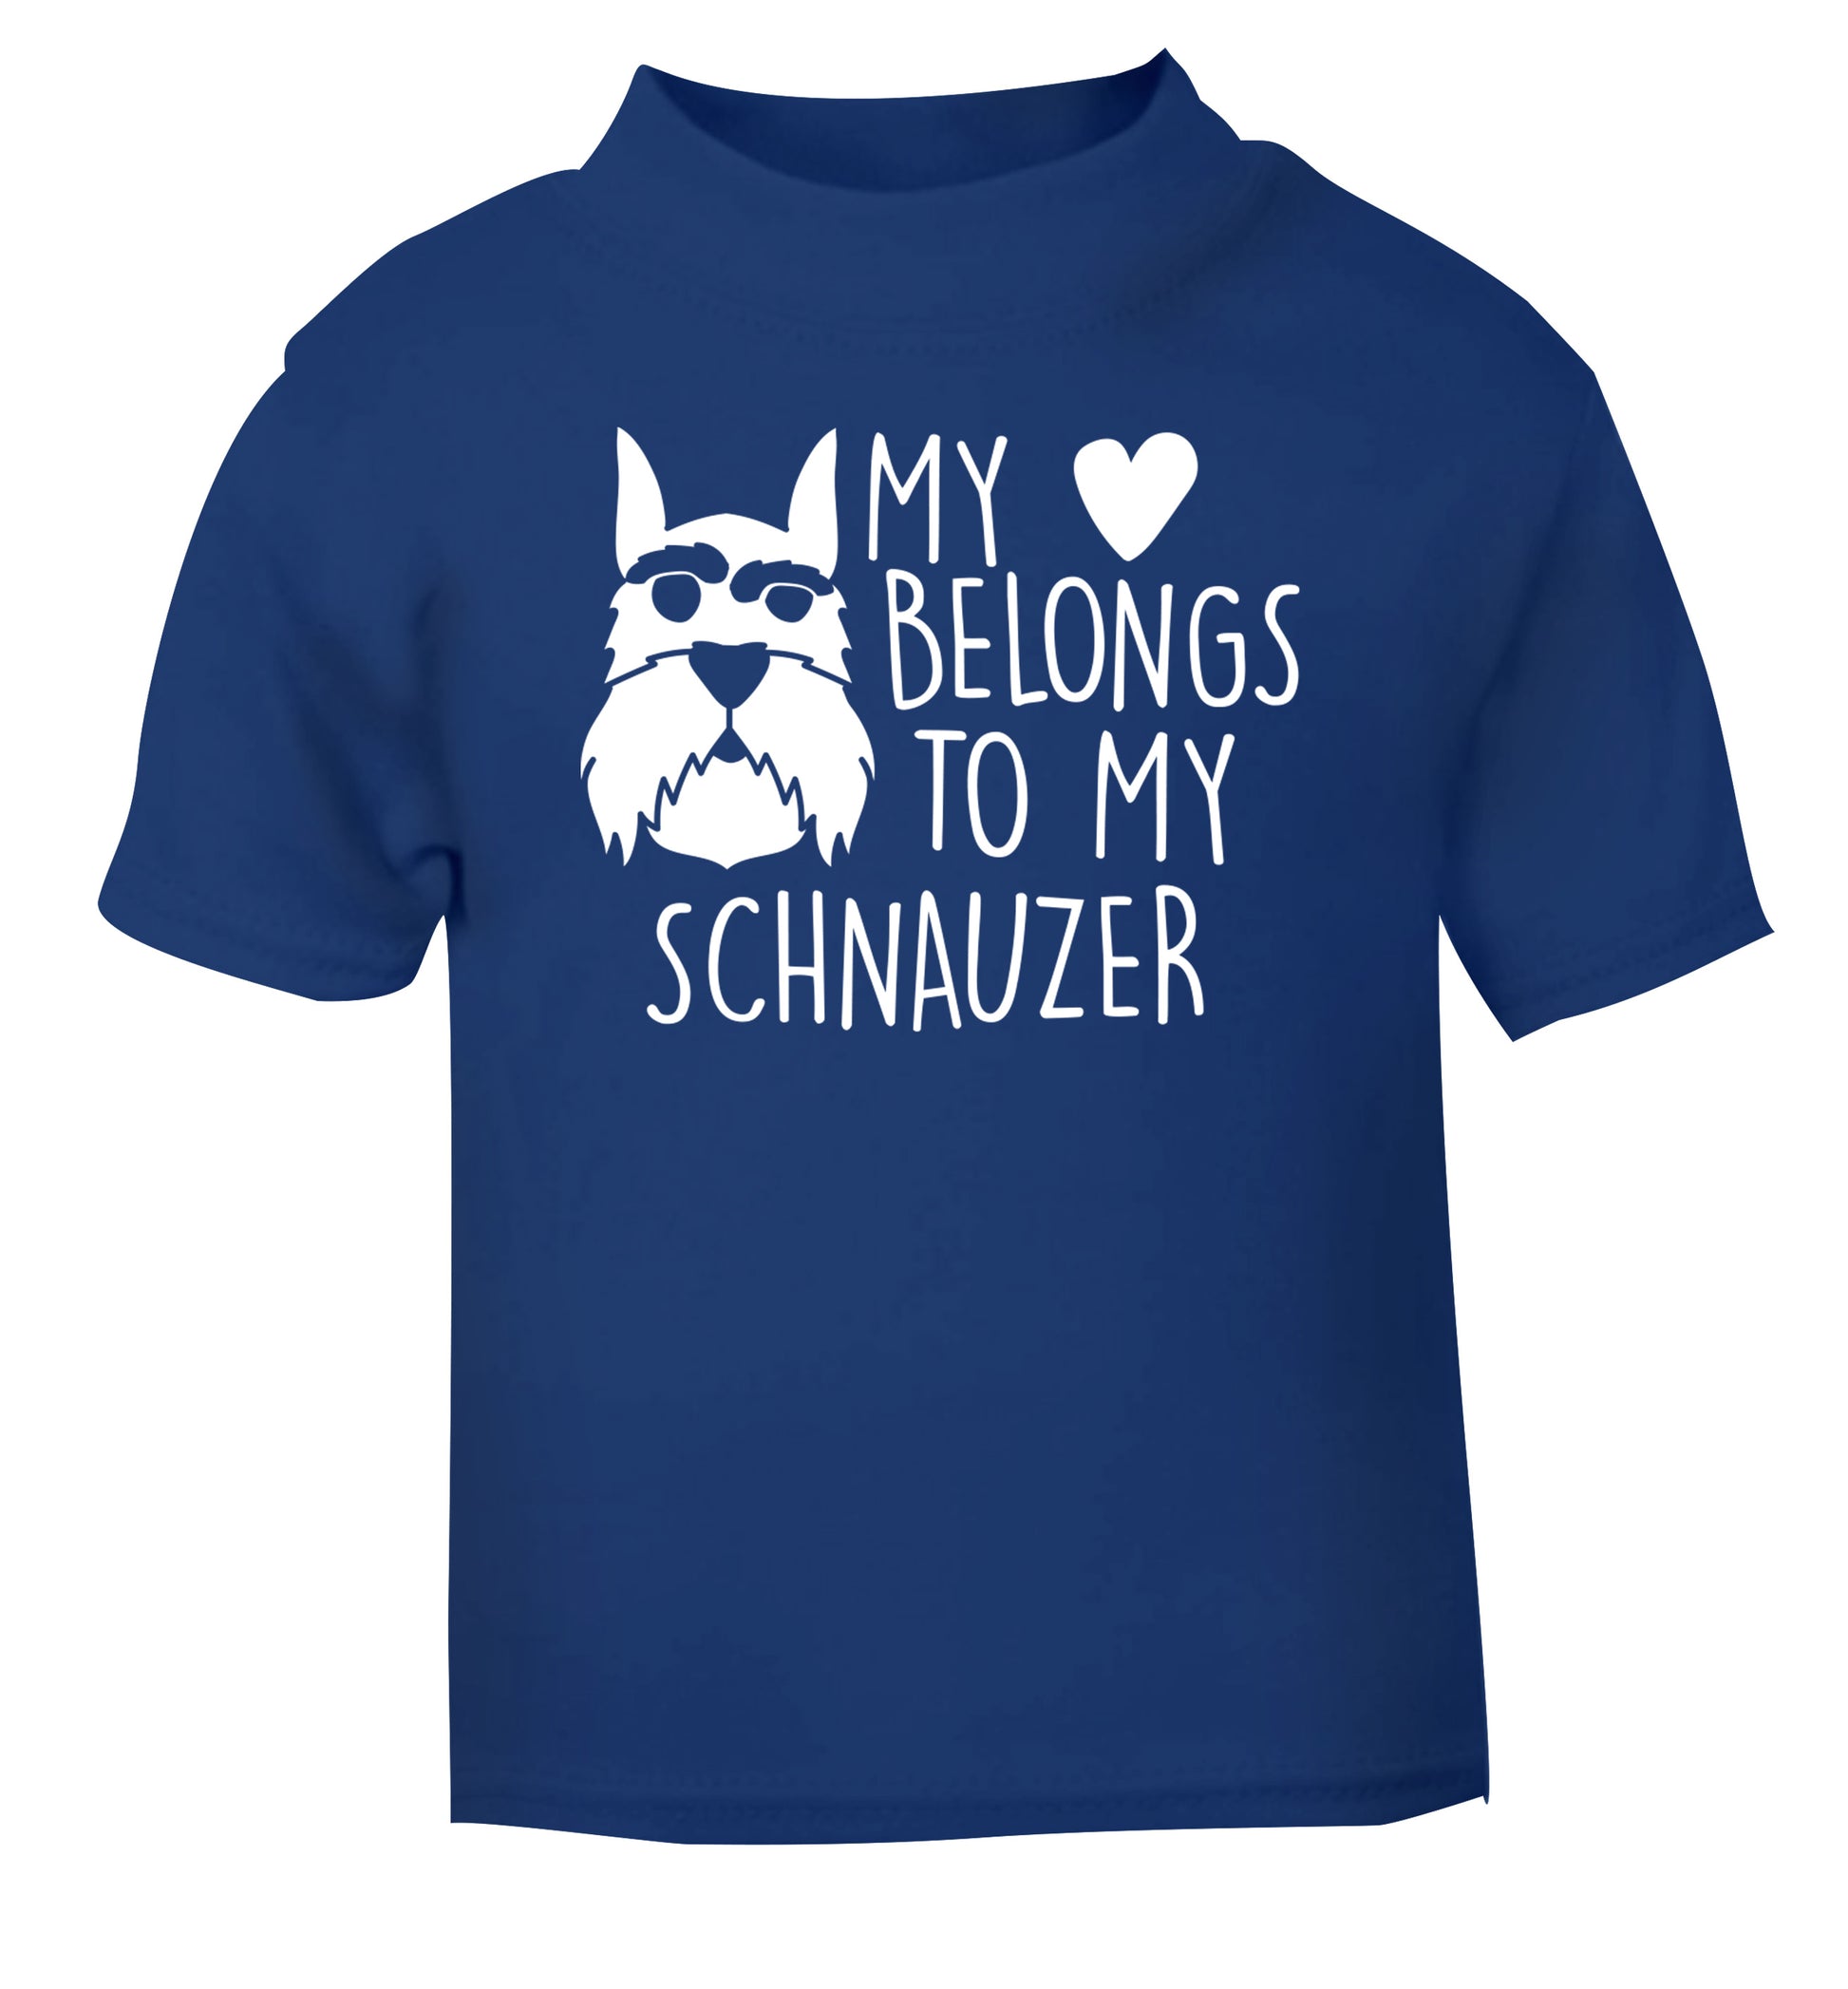 My heart belongs to my schnauzer blue Baby Toddler Tshirt 2 Years